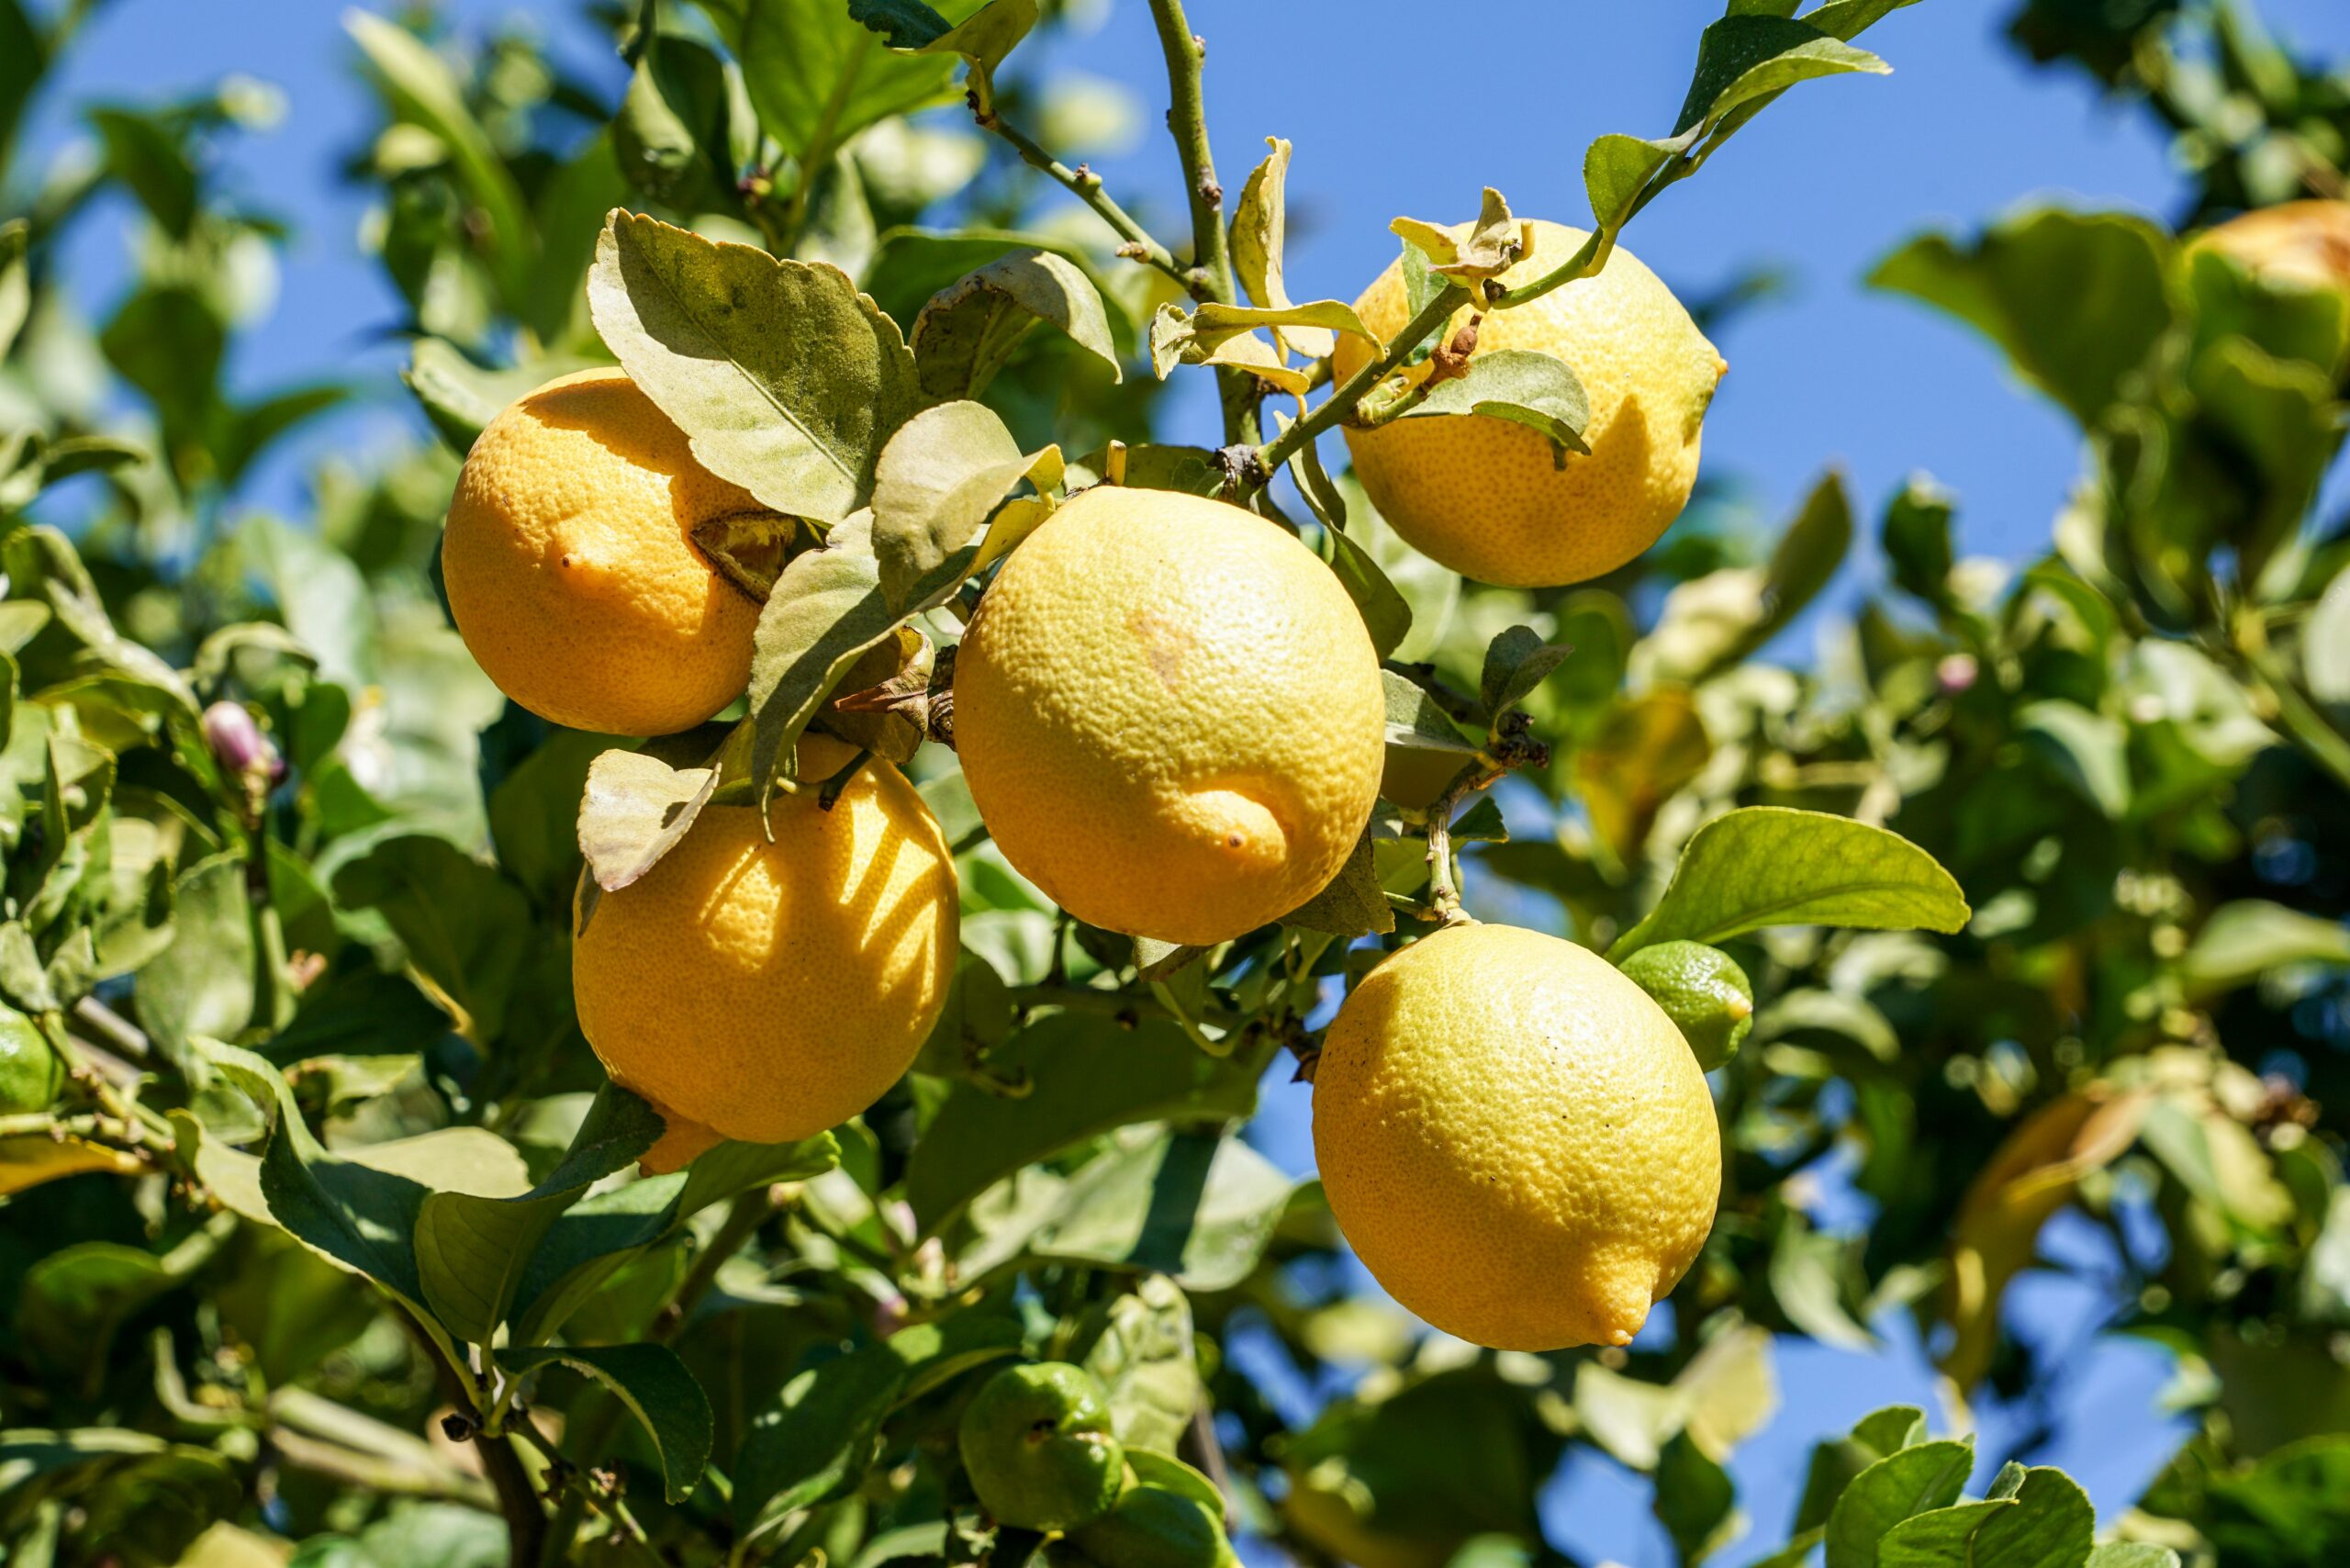 Lemons on a lemon tree in front of a clear blue sky